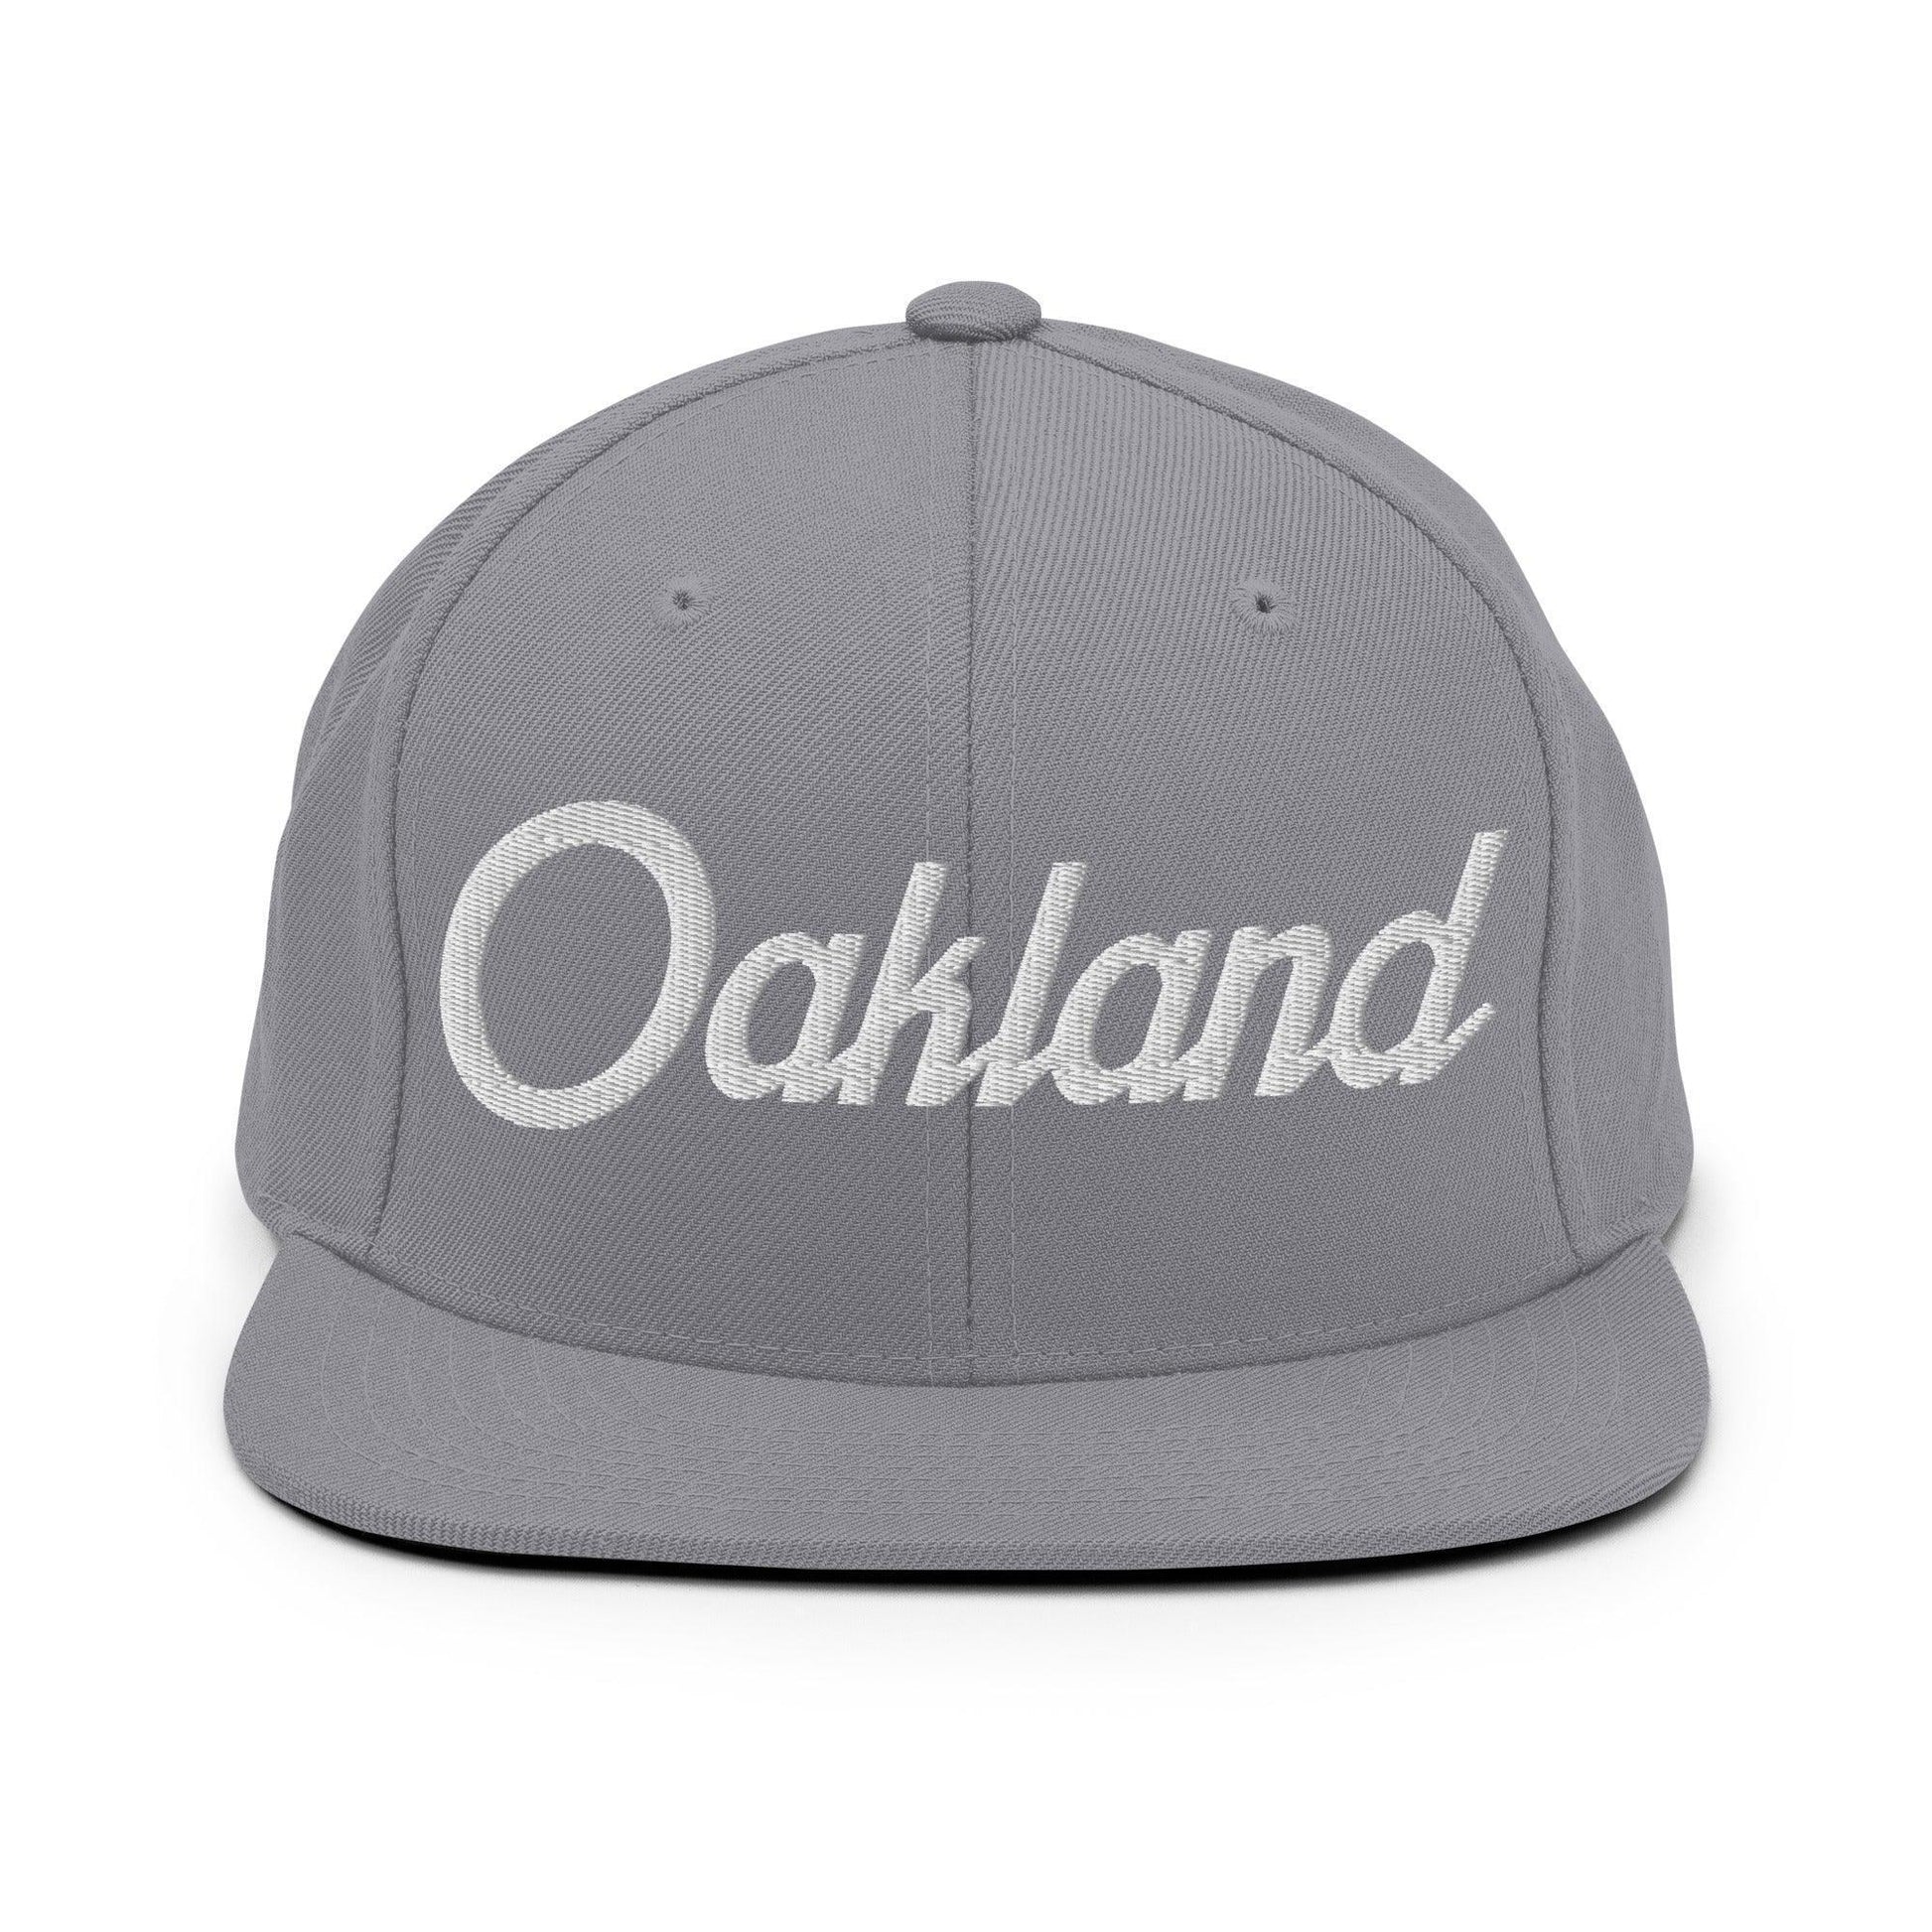 Oakland Script Snapback Hat Silver